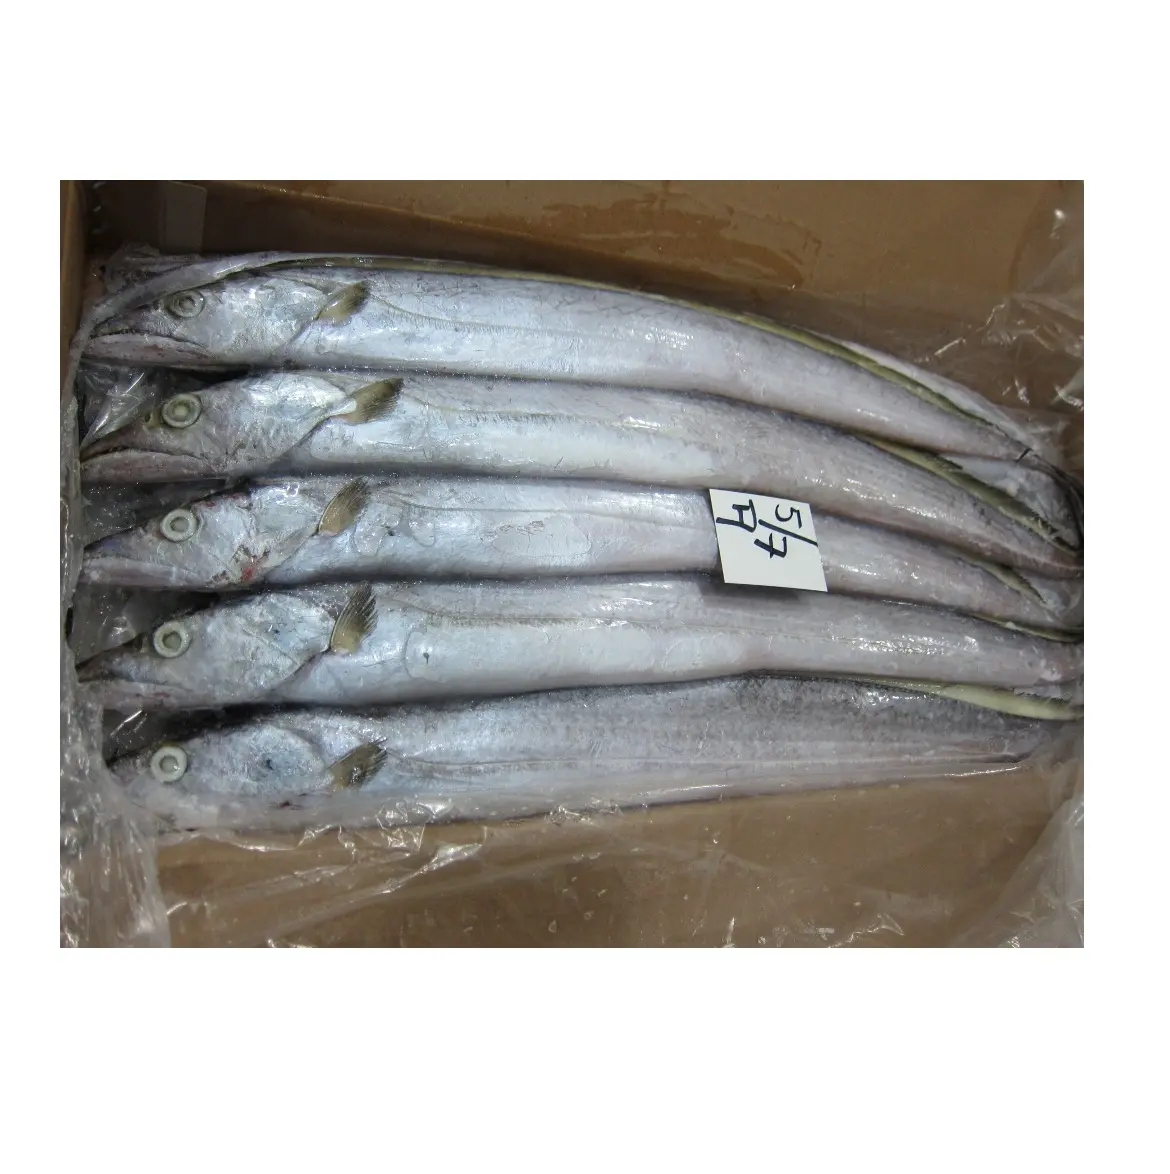 קפוא סרט דגים באיכות גבוהה פורה עגול סרט דגים קפוא פירות ים קפוא ribbonfish